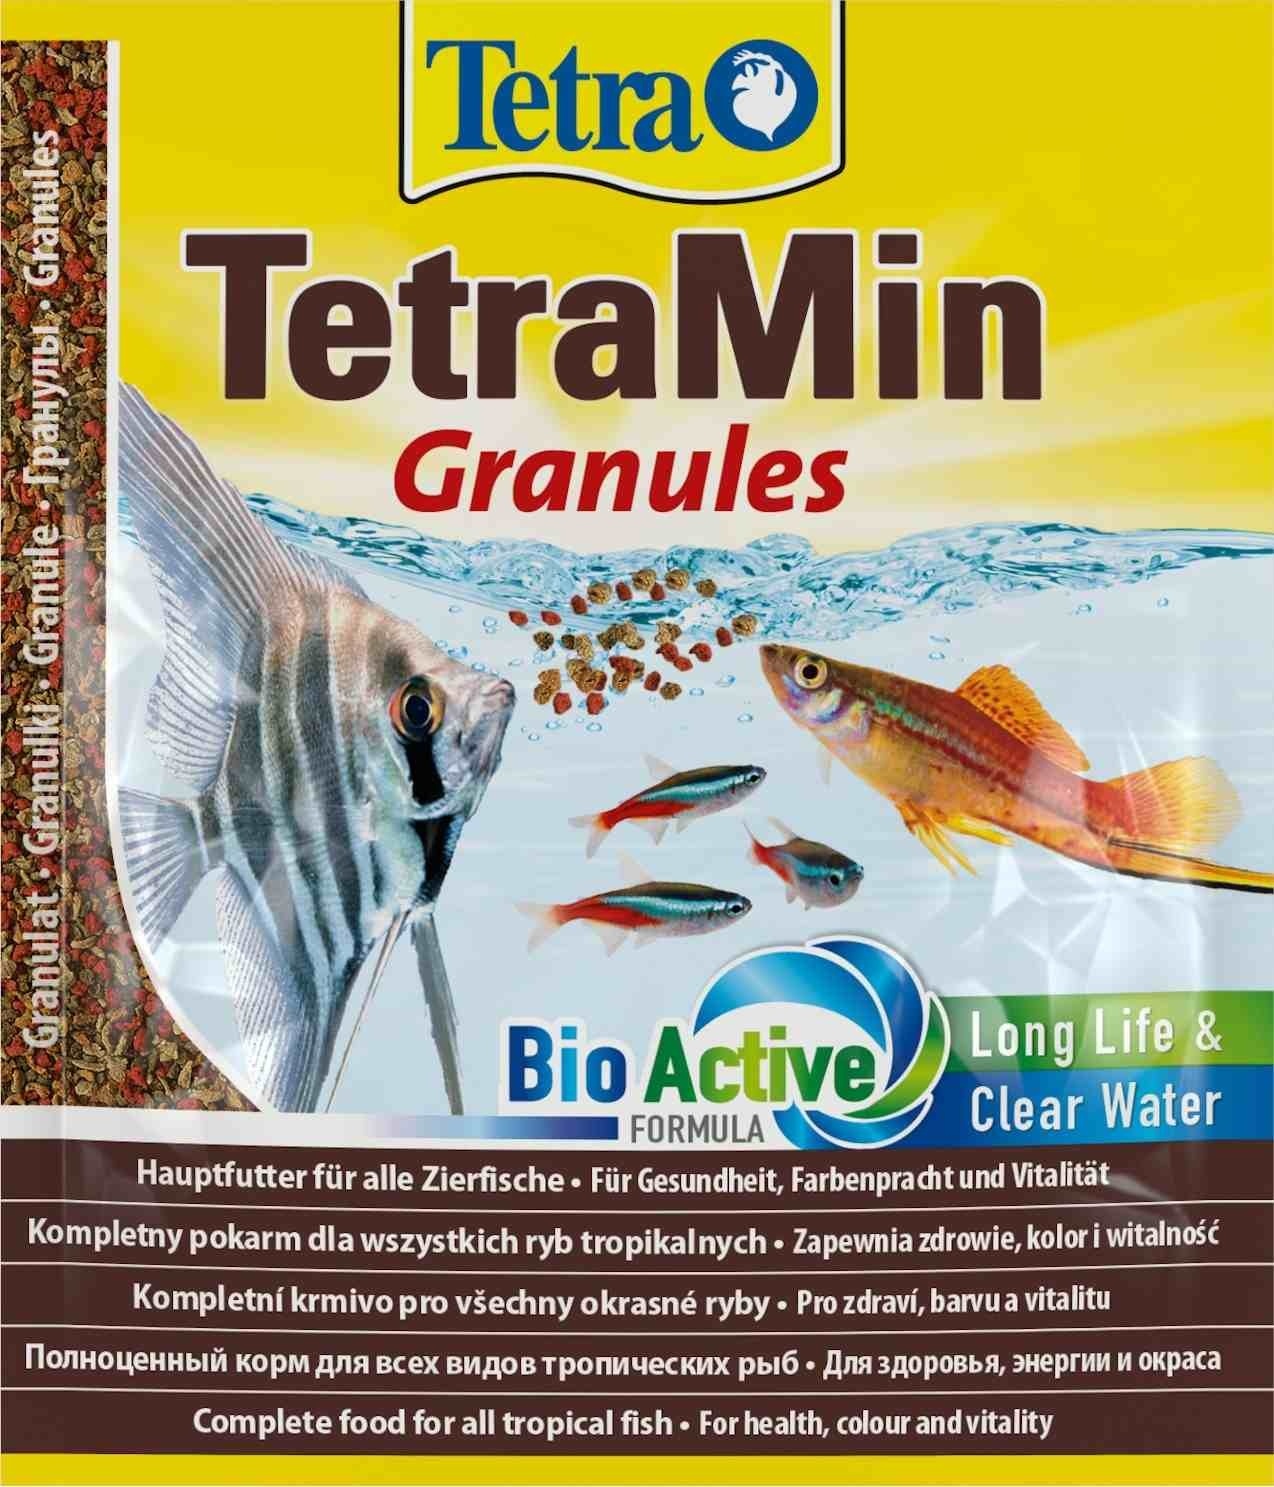 Tetra (корма) Tetra (корма) корм для всех видов тропических рыб. гранулы TetraMin Granules (15 г) tetra корма tetra корма корм для всех видов тропических рыб чипсы 55 г